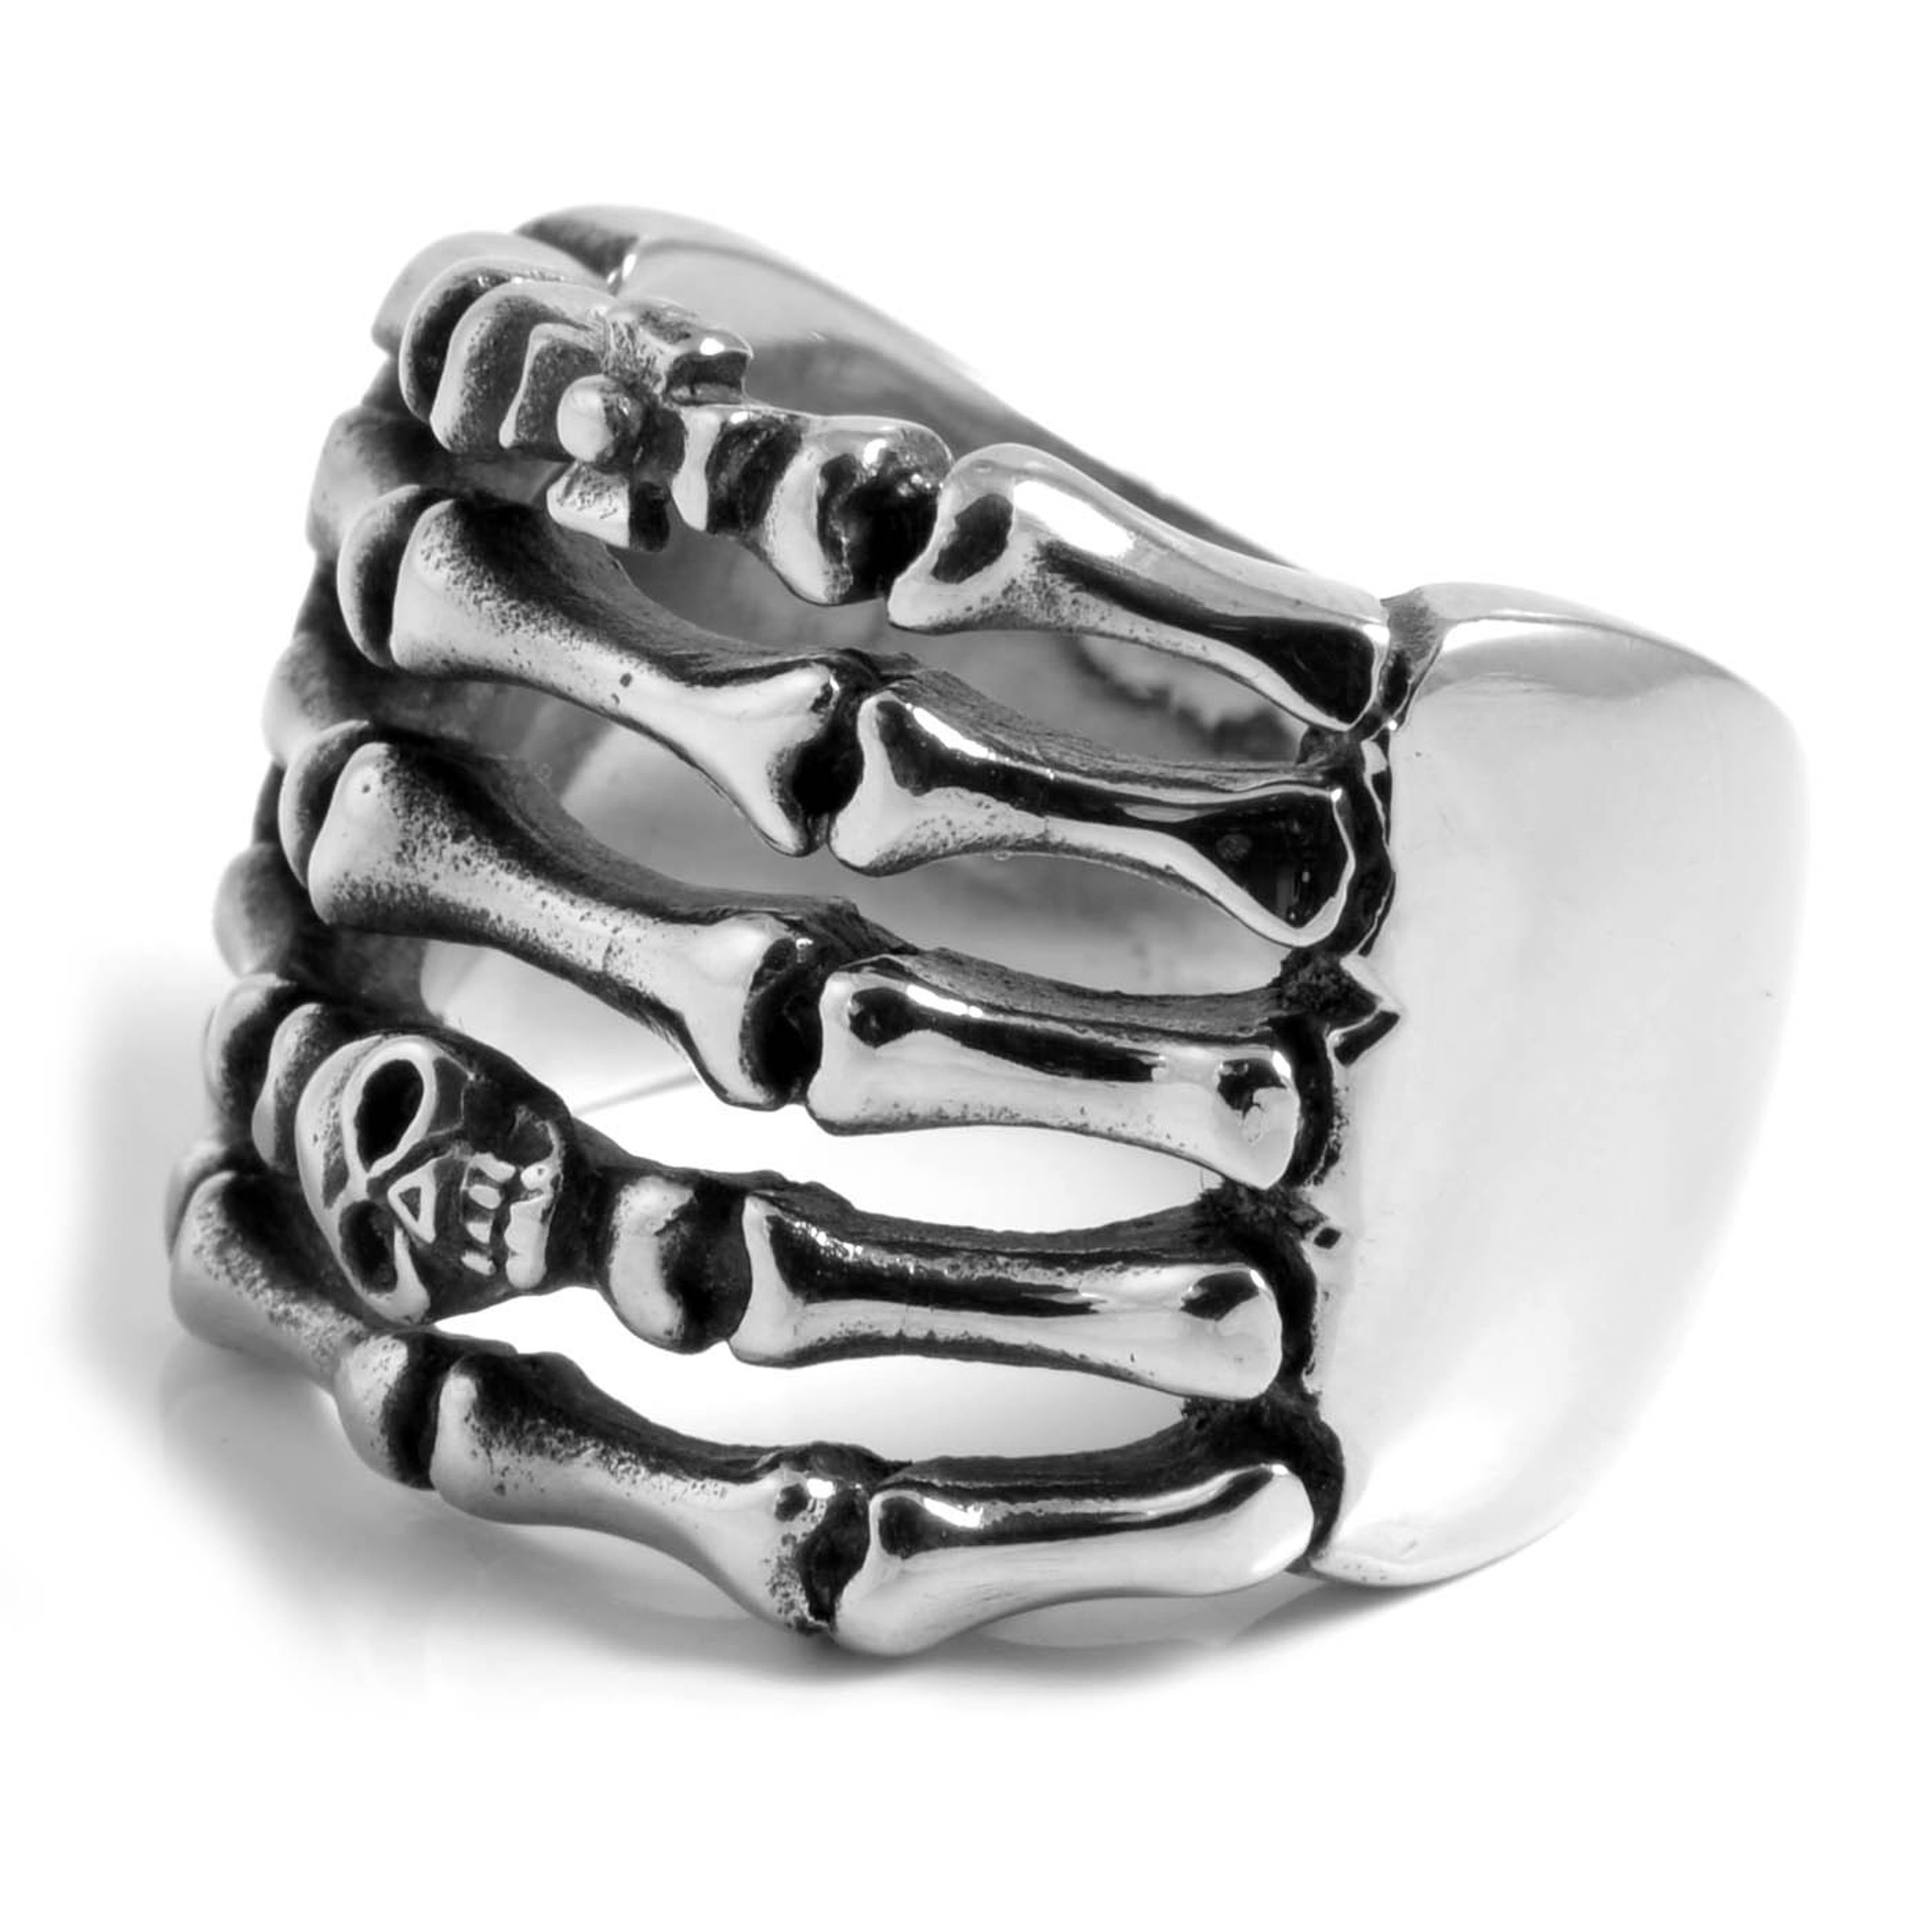 Silver-Tone & Black Stainless Steel Skull & Bones Ring